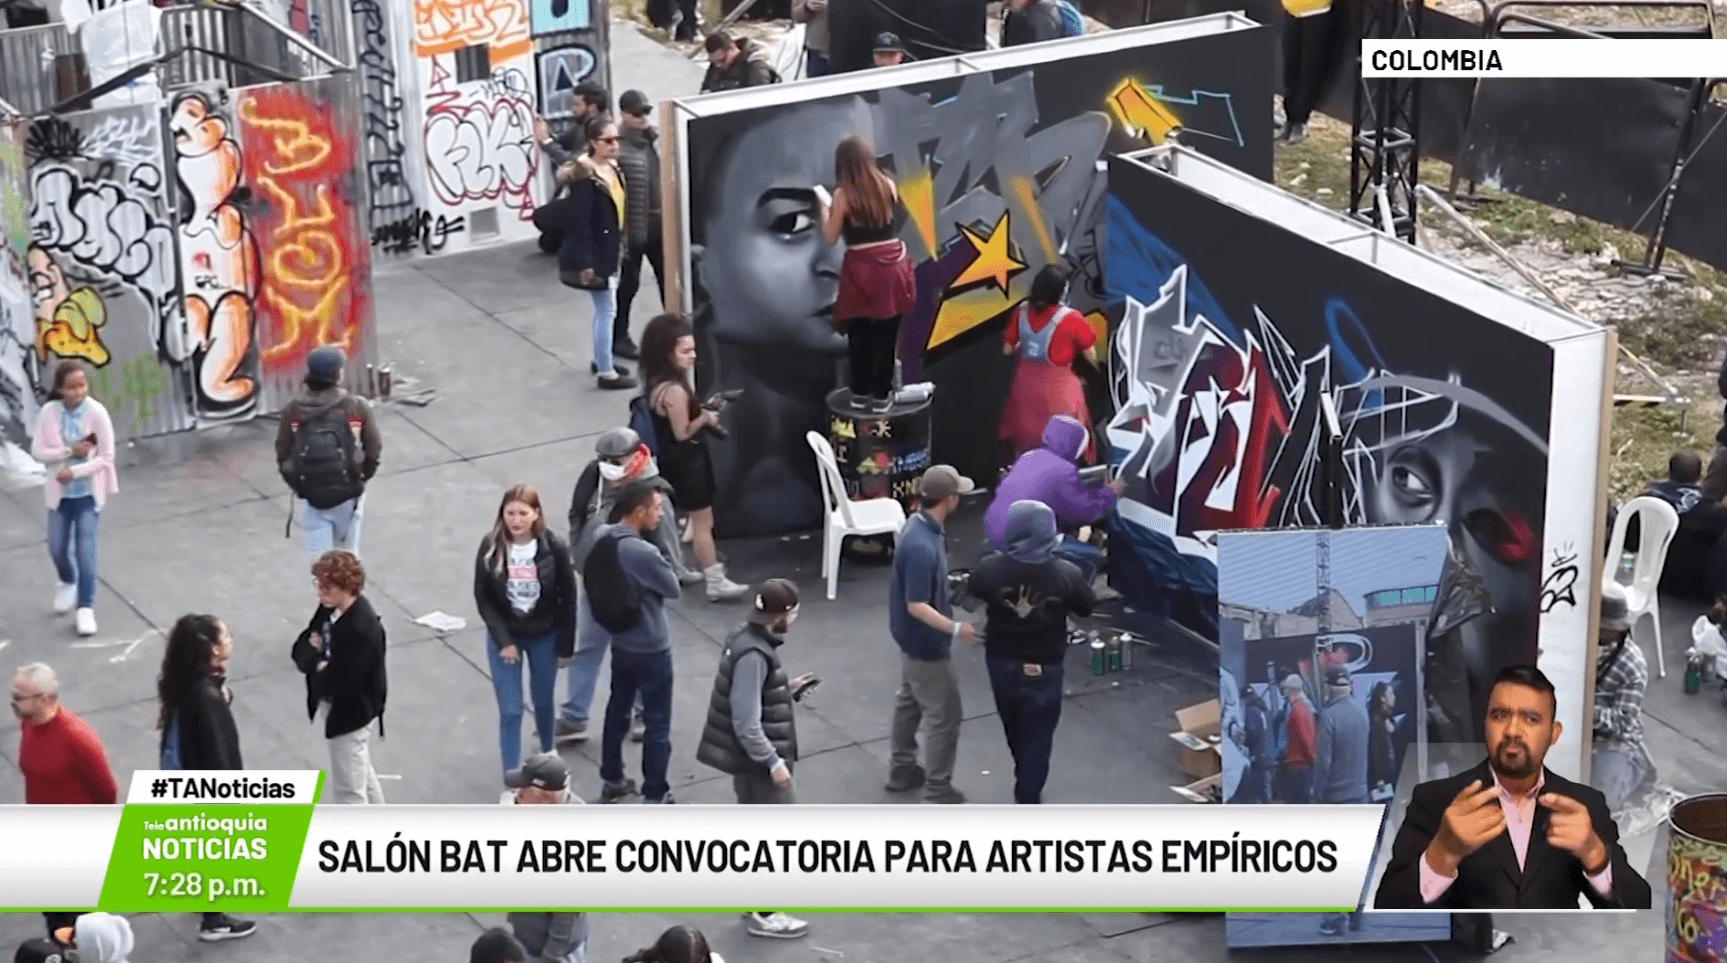 Salón BAT abre convocatoria para artistas empíricos